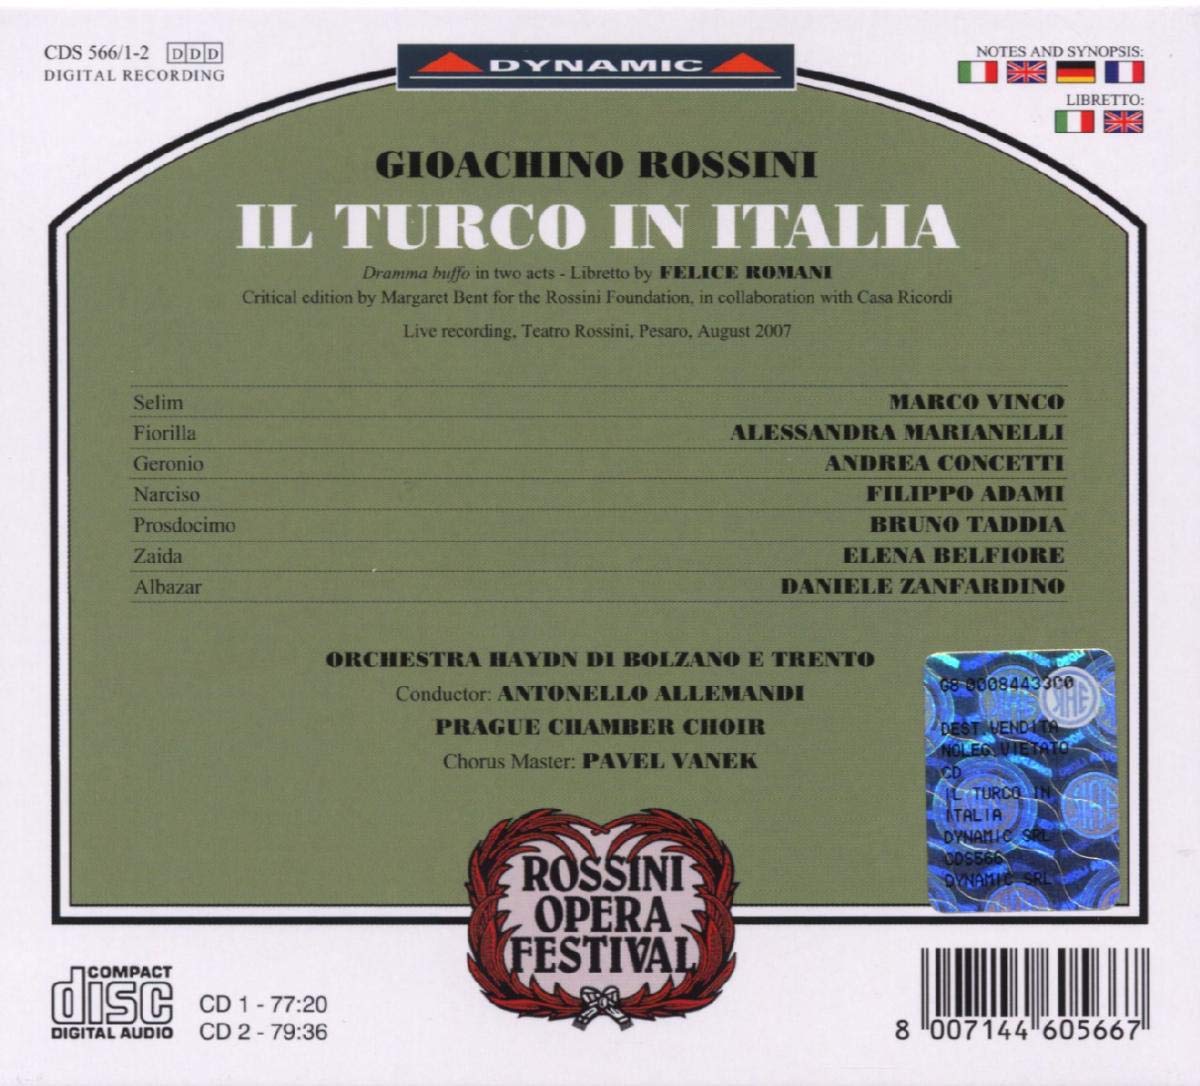 Marco Vinco 조아키노 로시니: 오페라 '이탈리아의 터키인' (Gioacchino Rossini: Il Turco In Italia) 